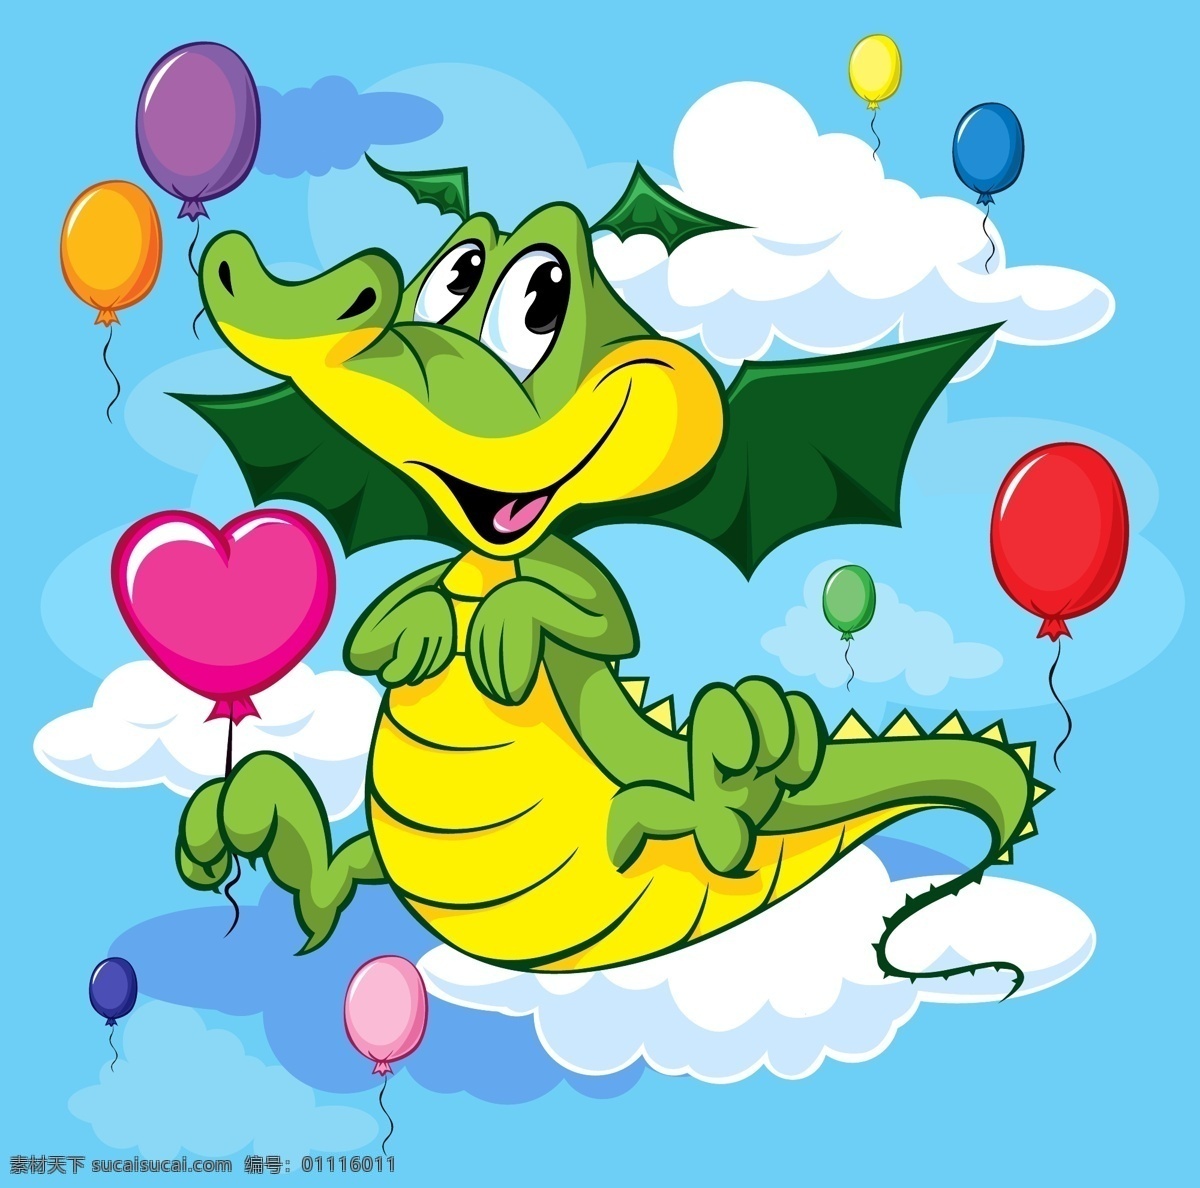 调皮 恐龙 矢量 史前动物 动物 气球 爱心 心形 心型 云朵 白云 节日 庆祝 祝福 贺卡 卡片 童趣 卡通 插画 背景 海报 画册 矢量动物 生物世界 野生动物